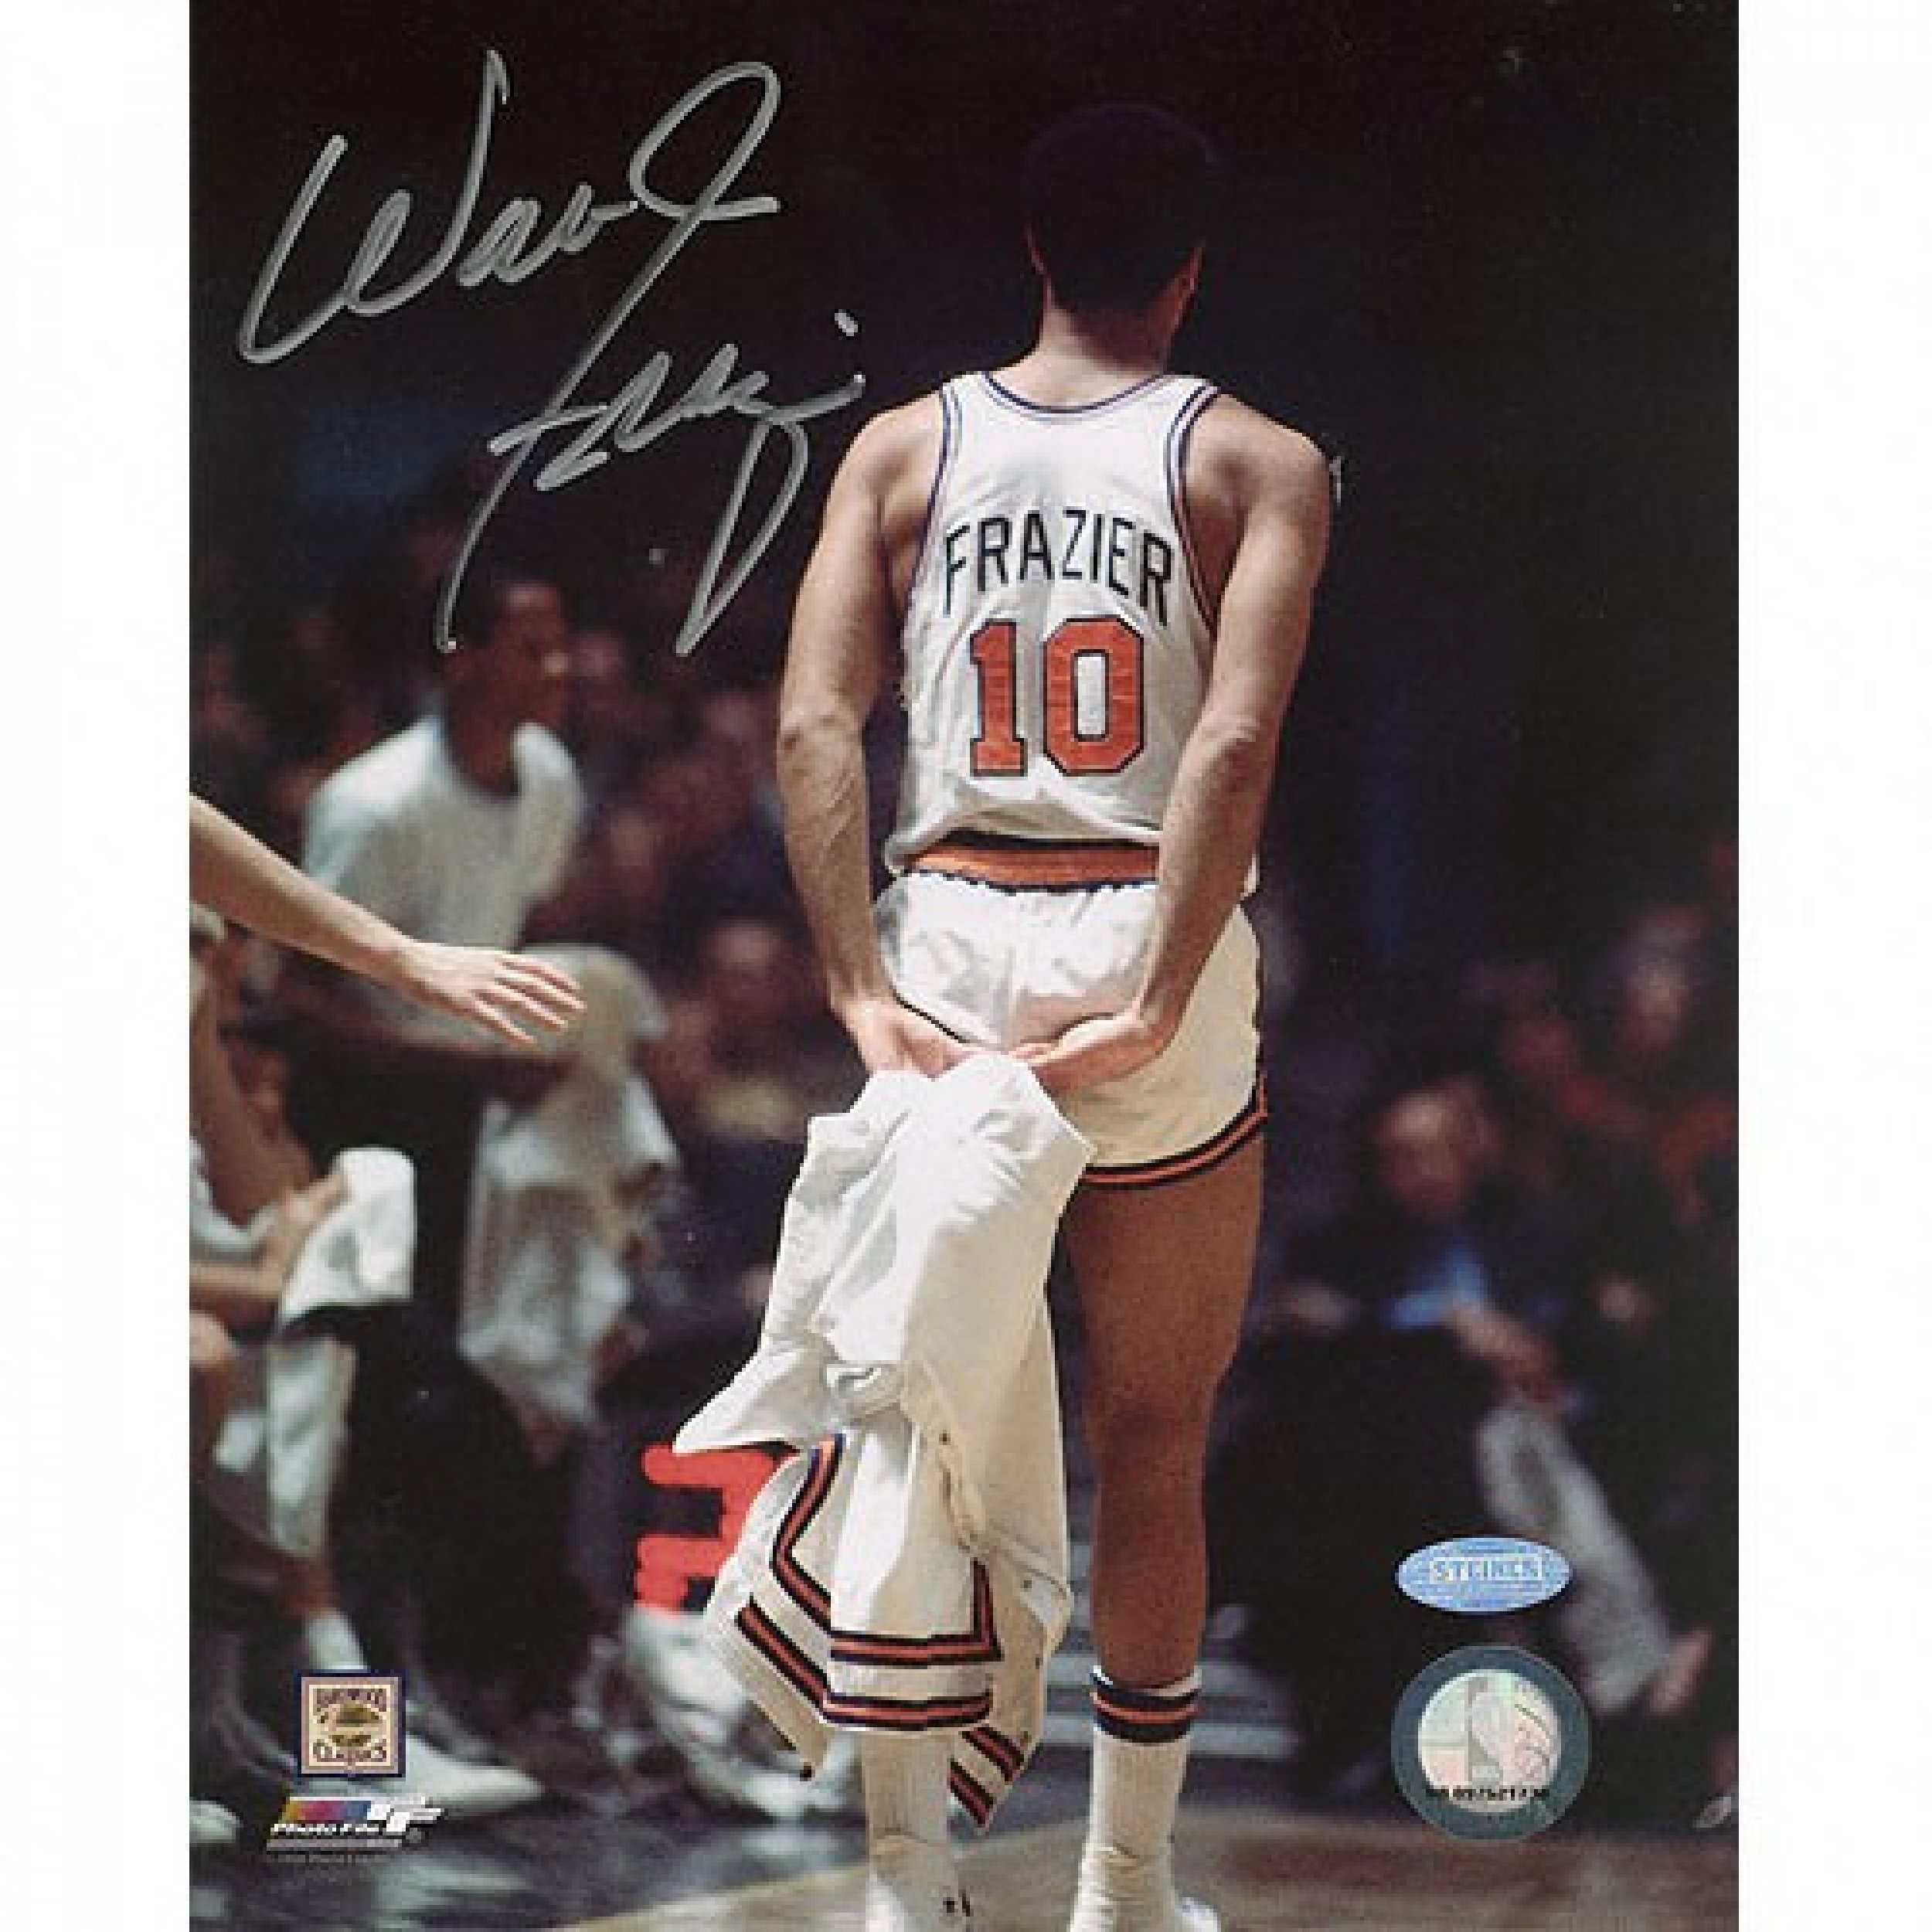 New York Knicks 1973 38 years